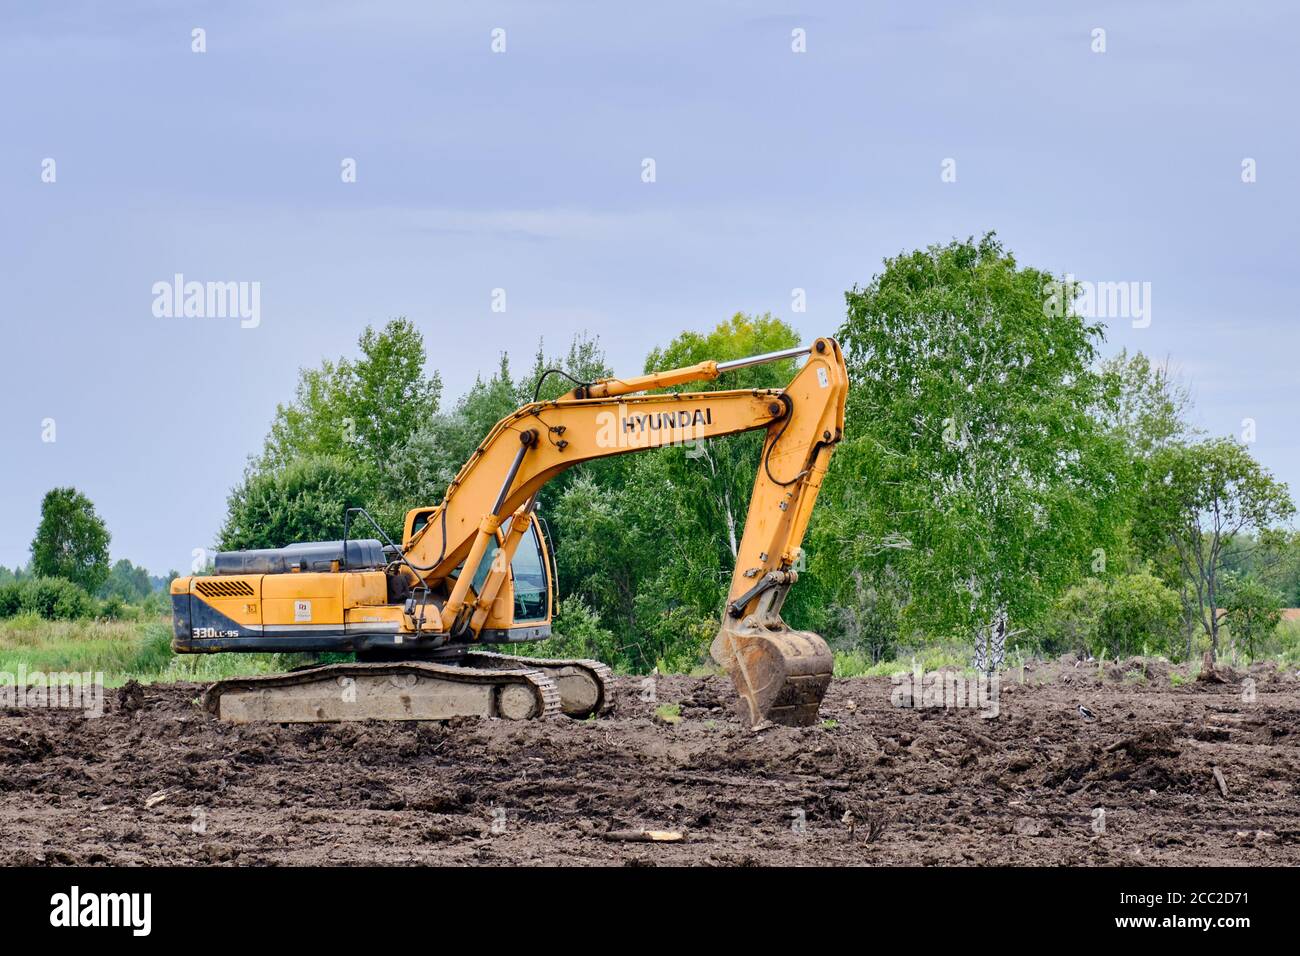 Yellow crawler excavator Hyundai is working on land shipment Stock Photo